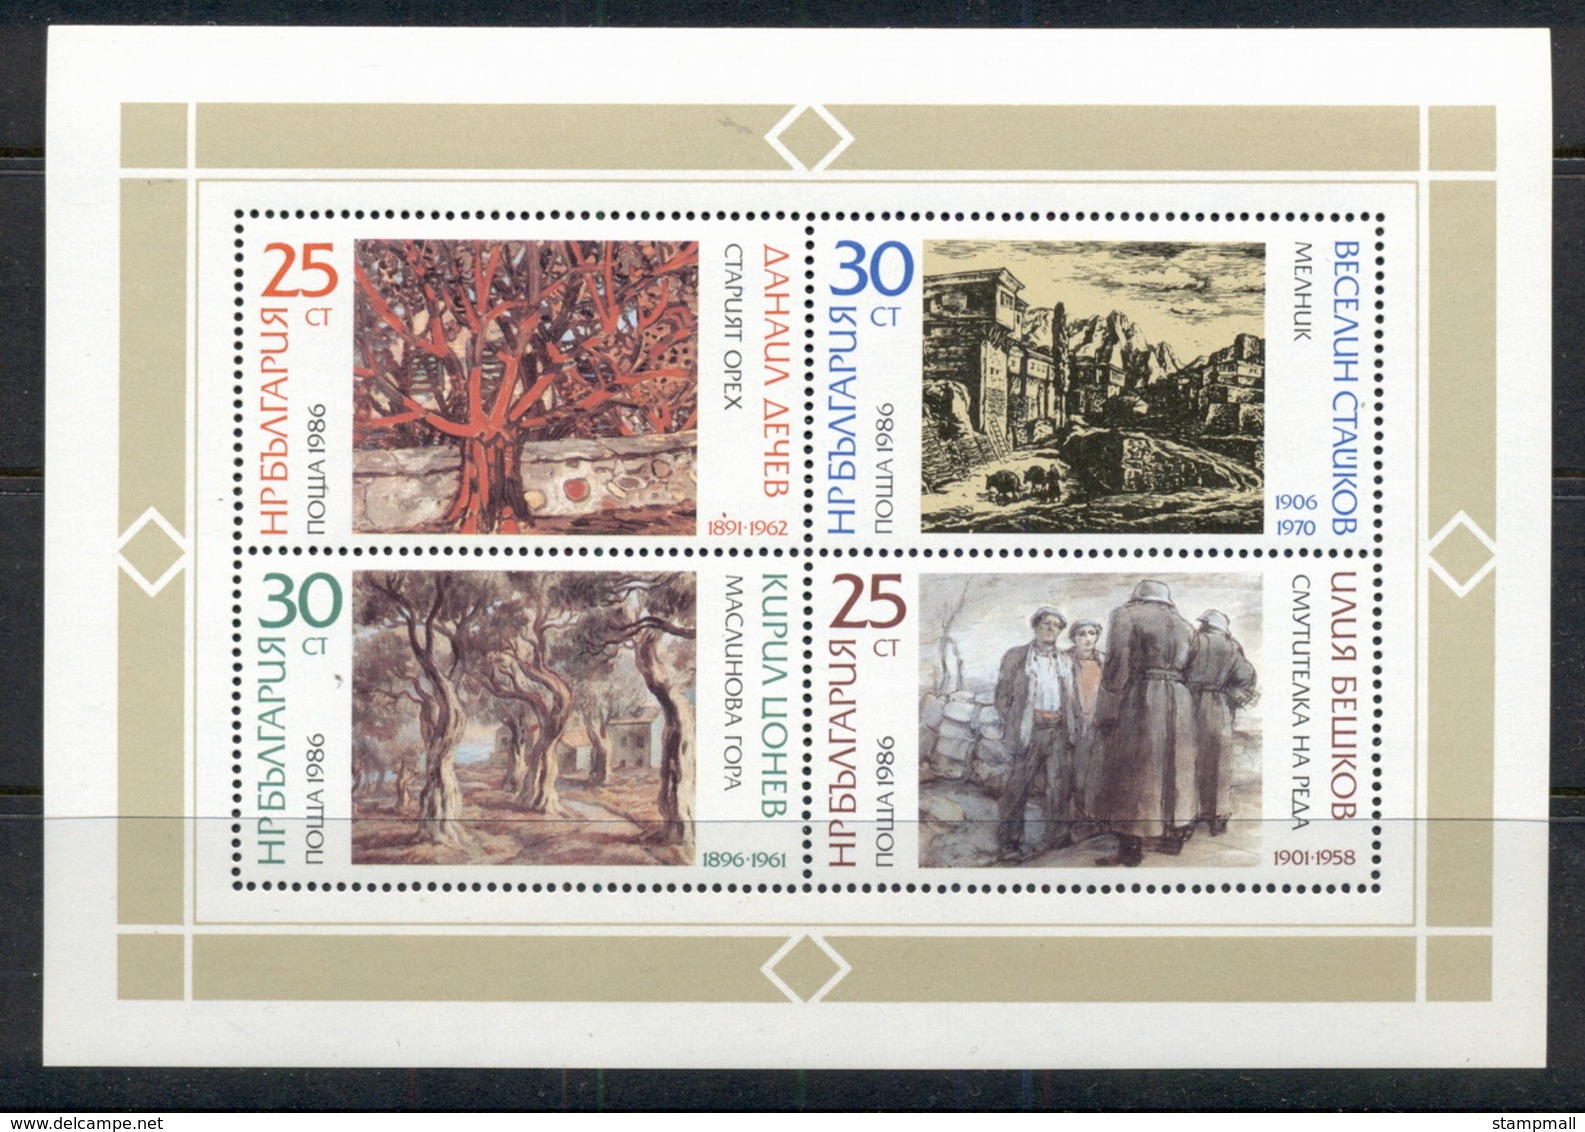 Bulgaria 1986 Paintings By Bulgarian Artists MS MUH - Unused Stamps